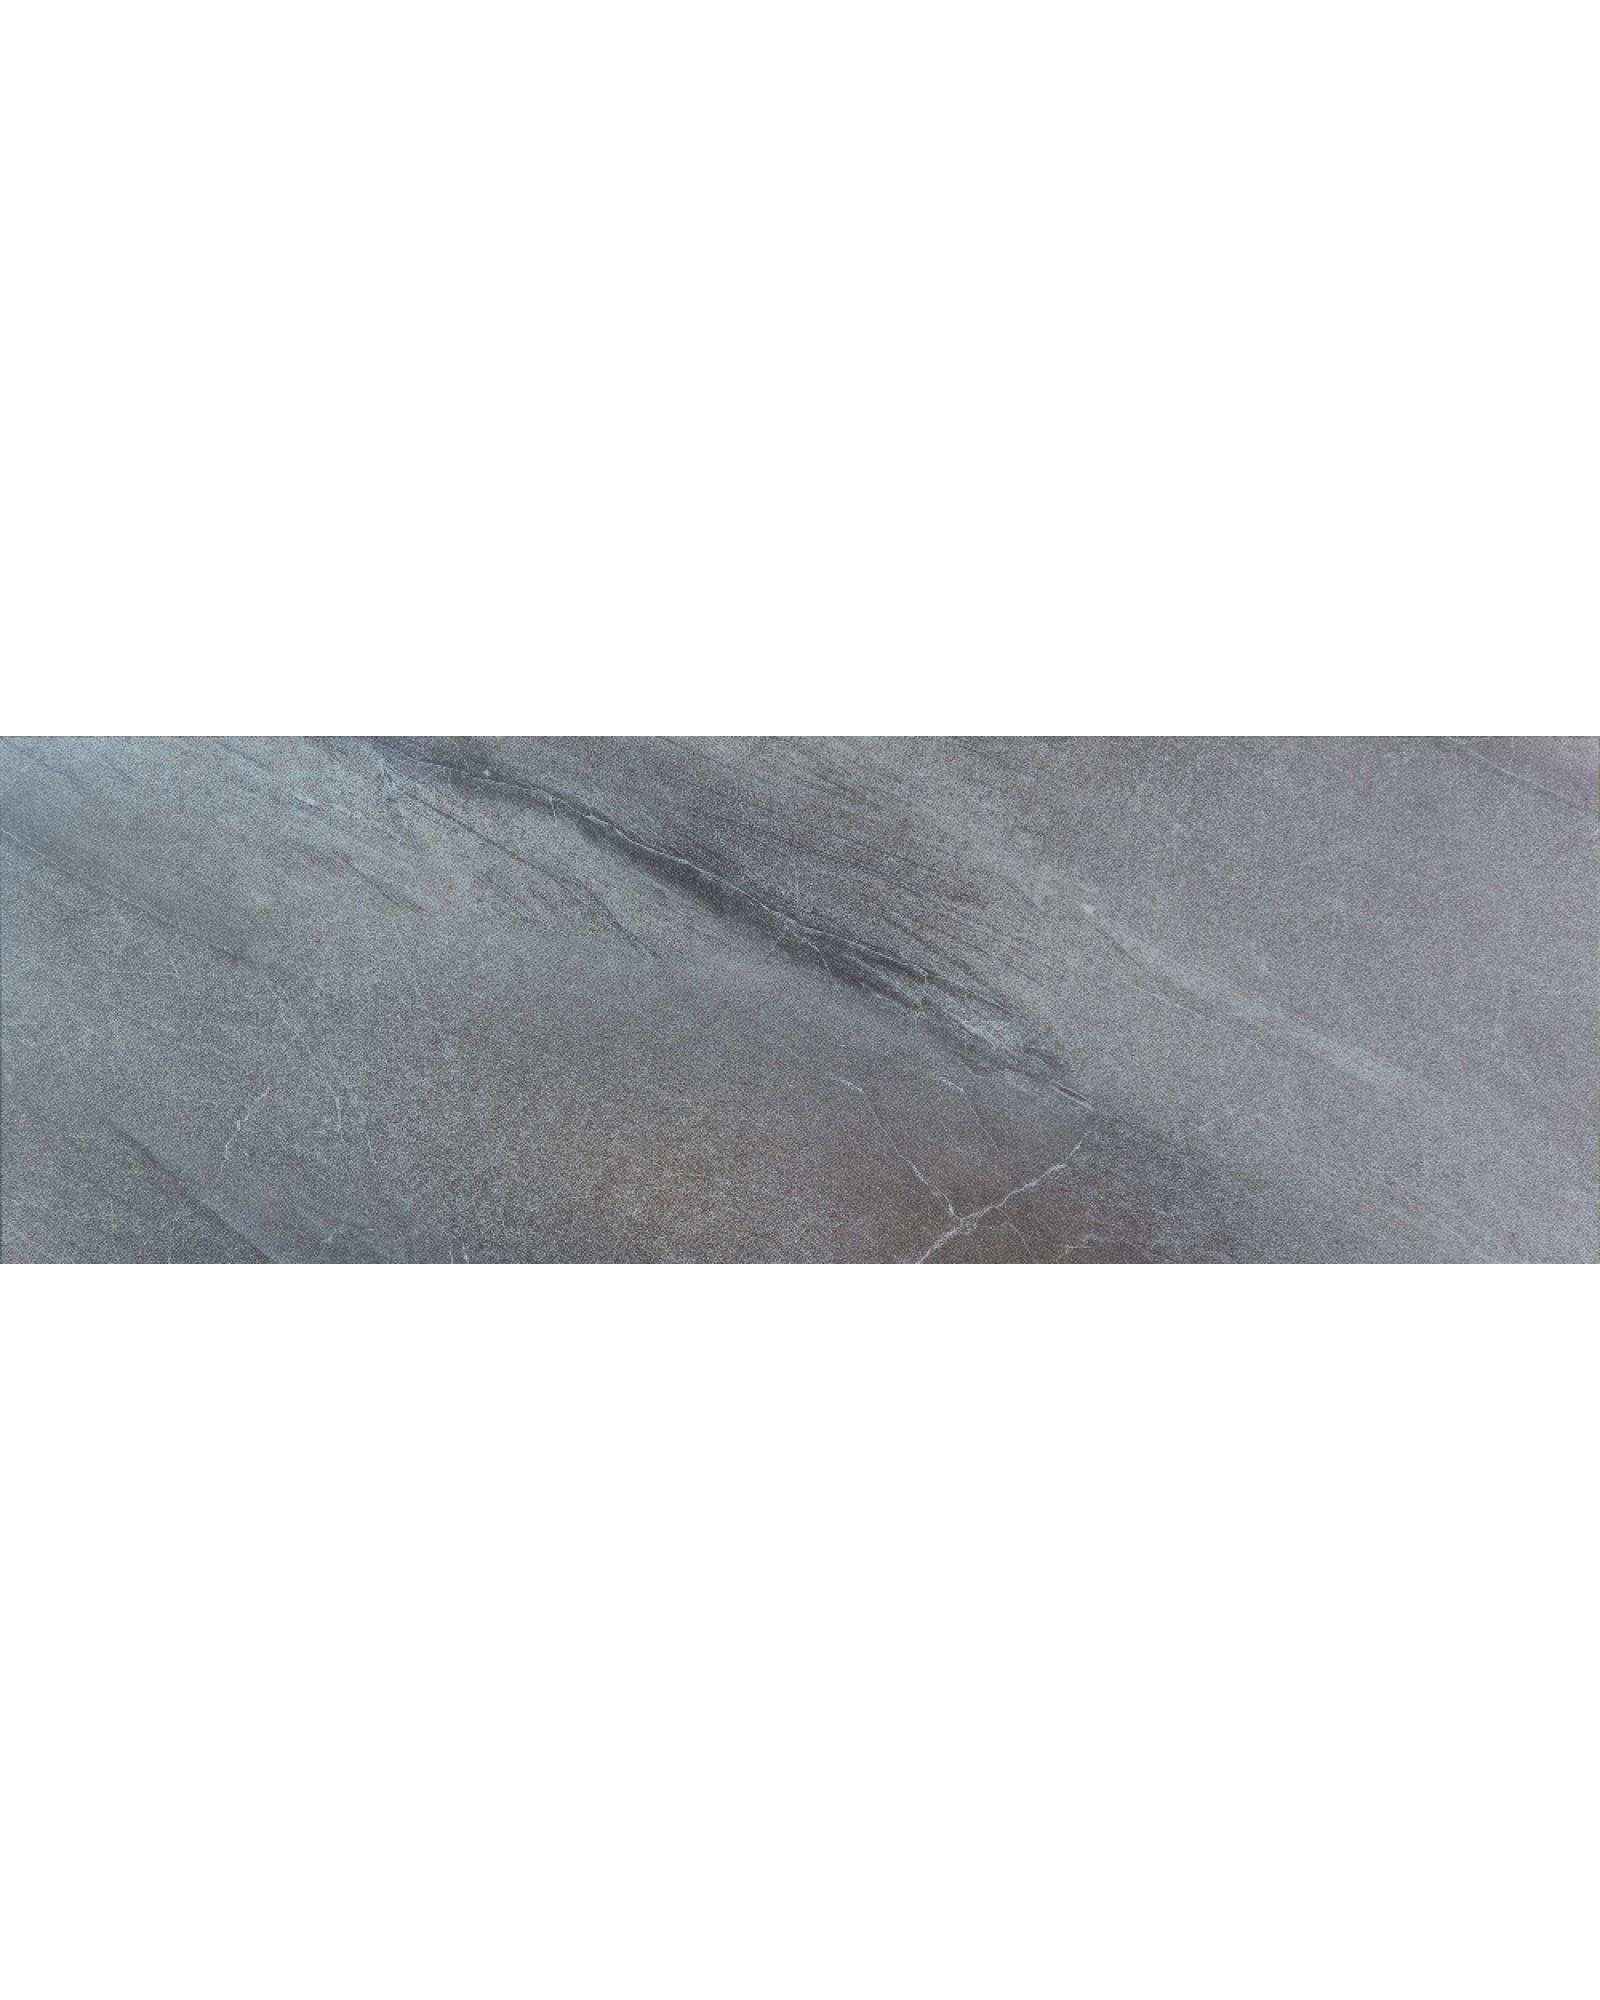 Фото 1 Виниловое напольное покрытие ALLFLOORS Бохум (под плитку) 4 мм (VC-018-11)